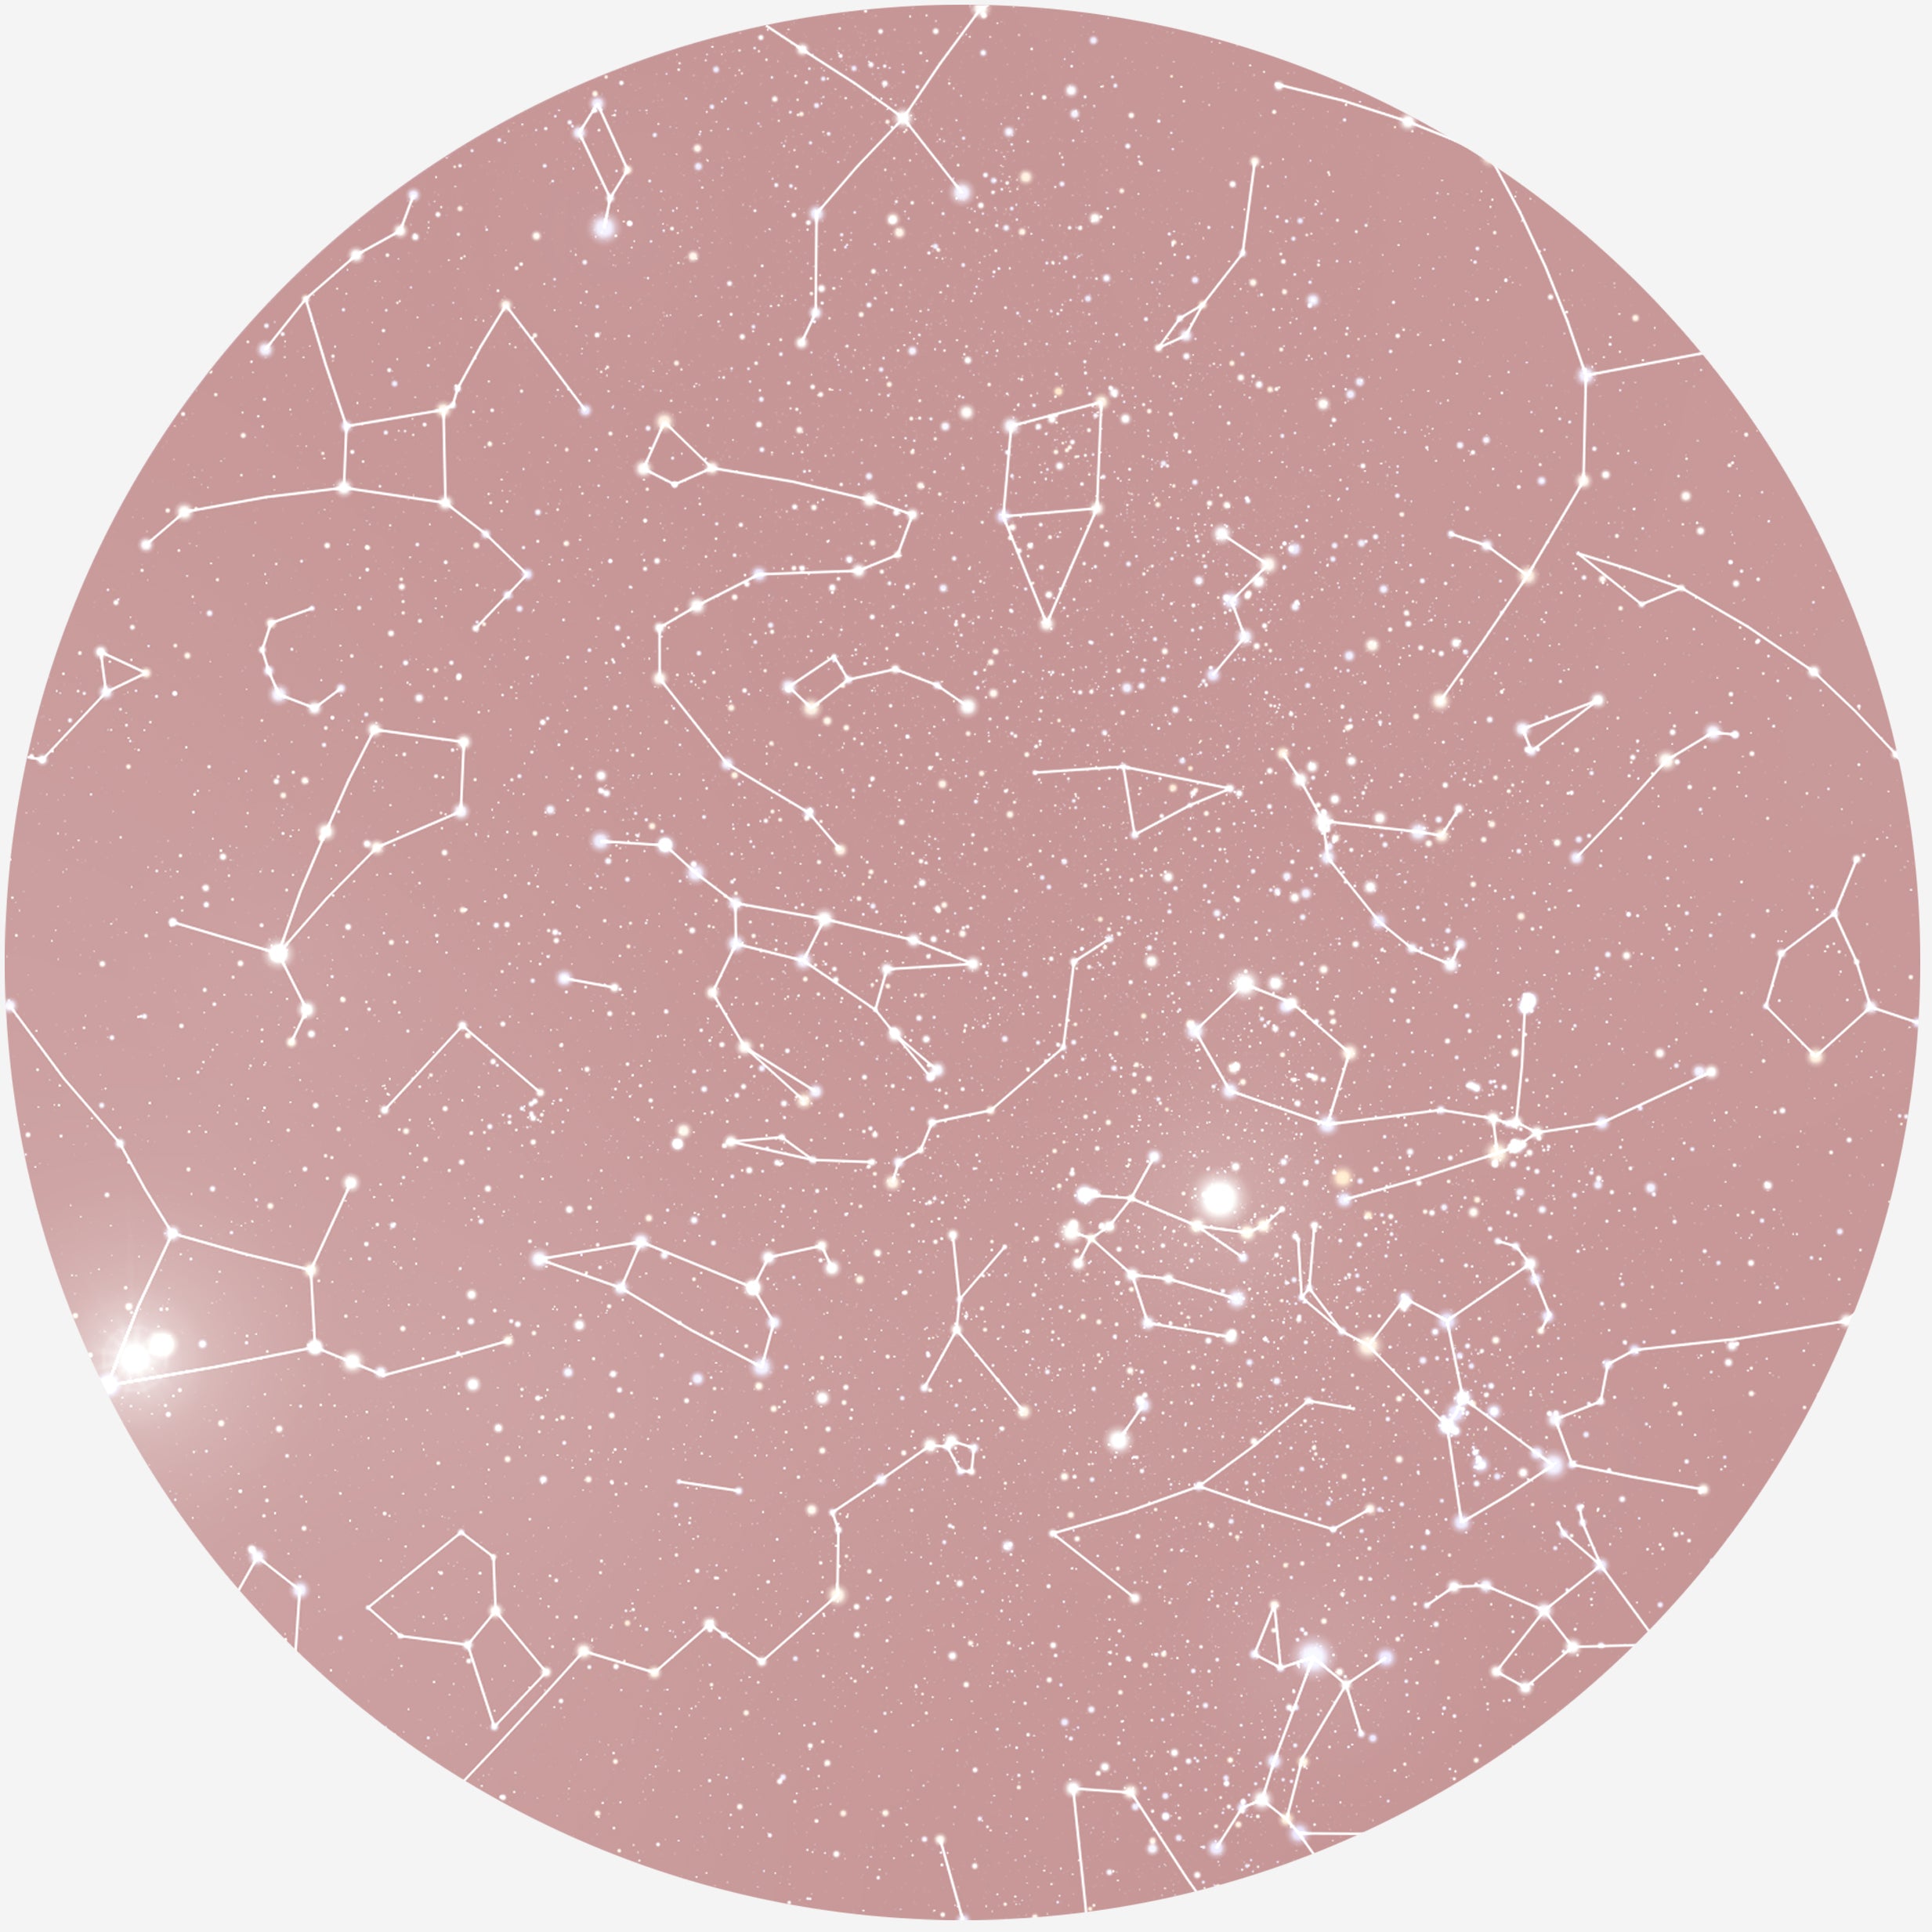 Billede af RUND PLAKAT MED PERSONLIG STJERNEHIMMEL (BLUSH)) - 20 cm / Stjernehimmel med stjernebilleder